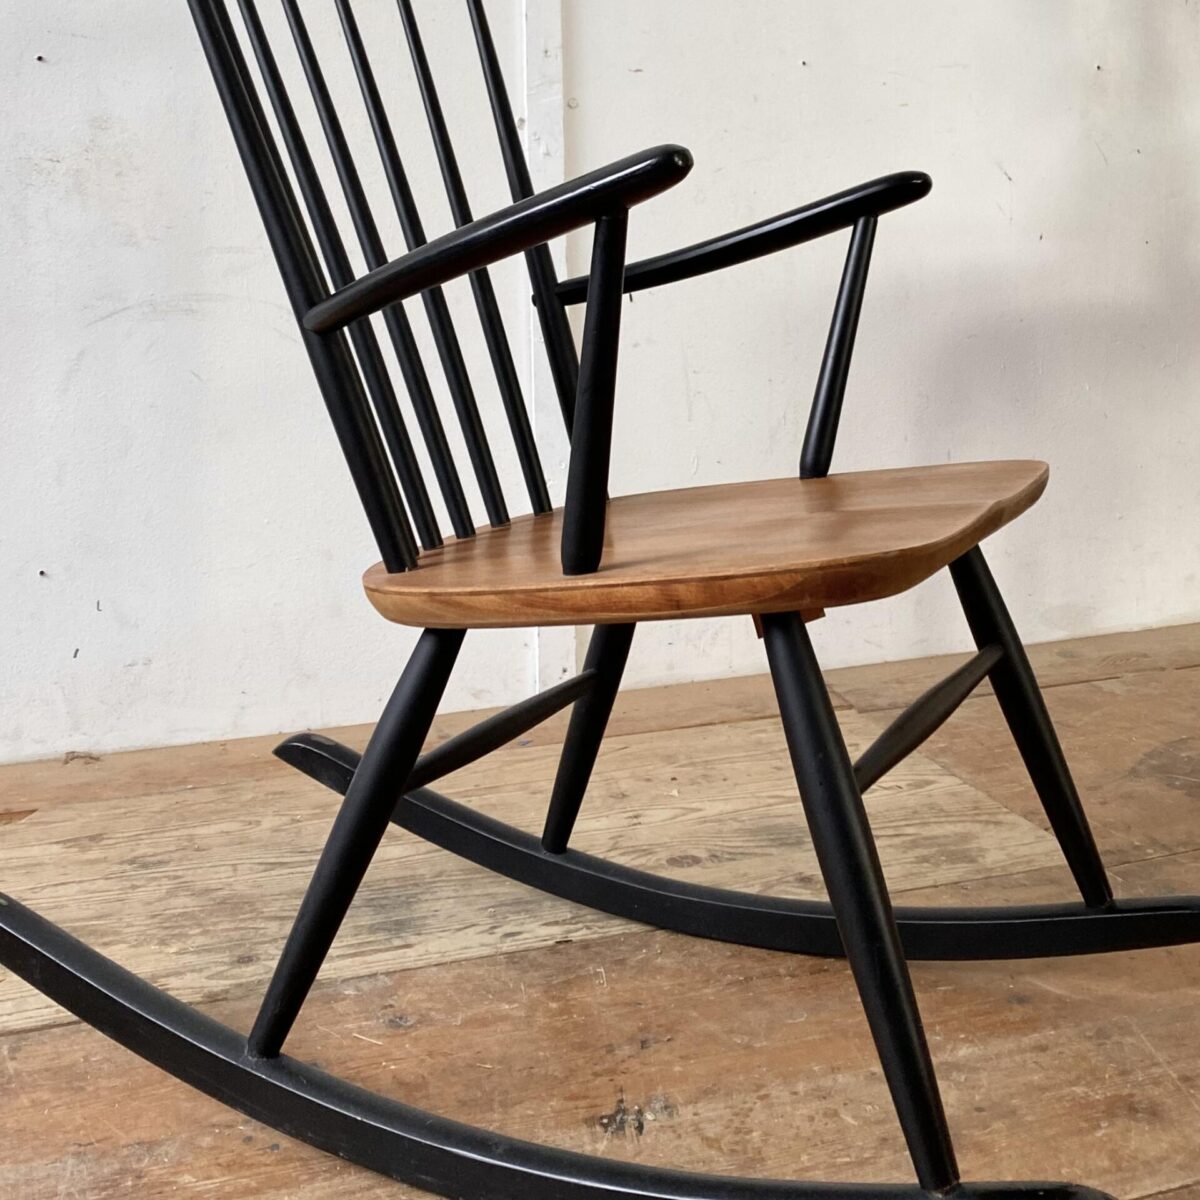 Deuxieme.shop Midcentury Teak Rocking Chair. Schaukelstuhl von Ronald Rainer aus den 50er Jahren. Der Sessel ist in stabilem guten Zustand. Die Sitzfläche ist mit Teakholz furniert, die übrigen Teile aus Buche Vollholz, schwarz lackiert, diverse kleinere Farb Abschürfungen. 